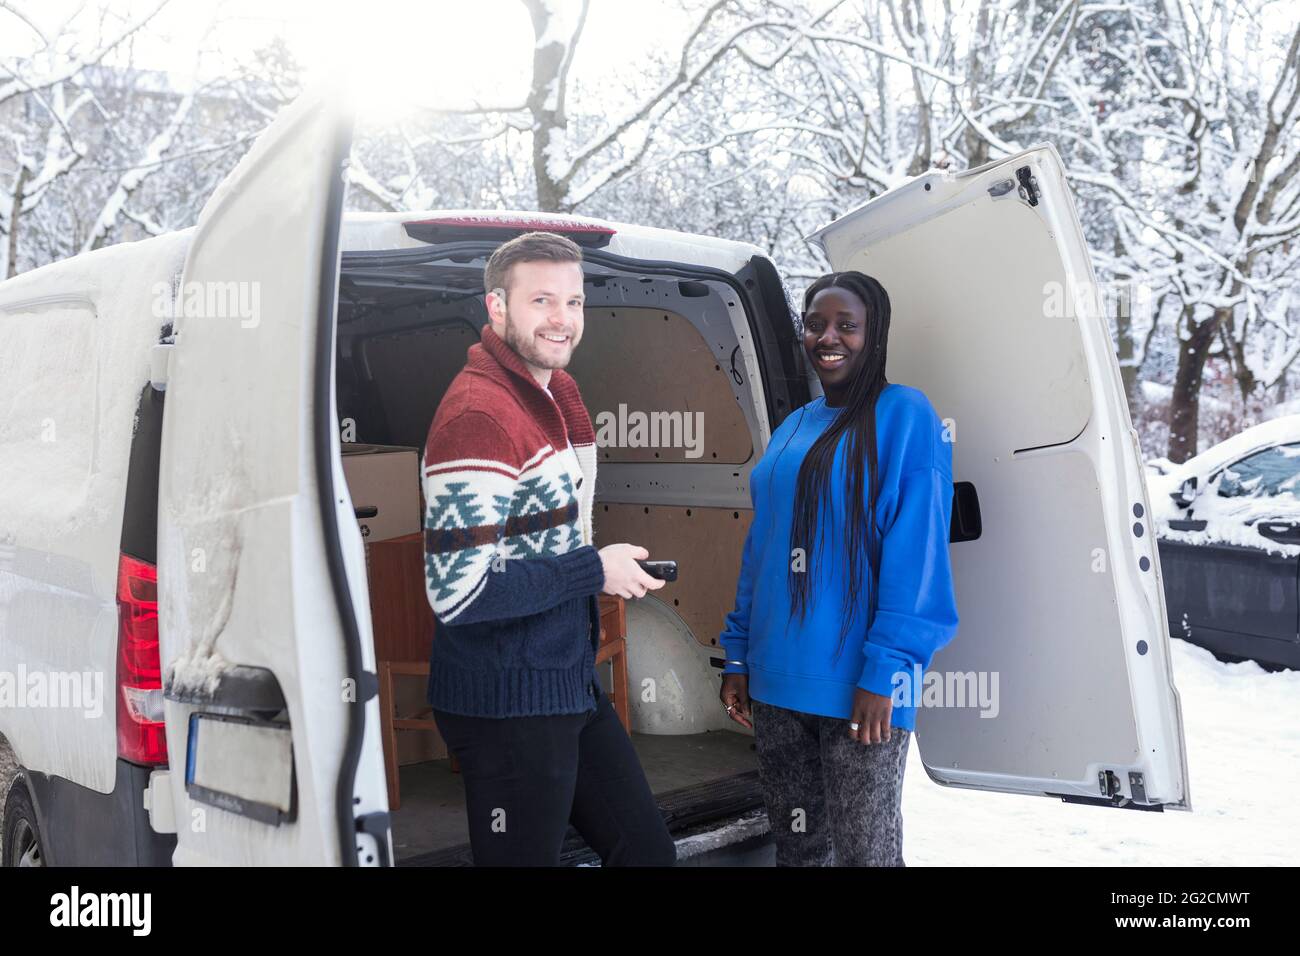 Paar entladen Van im Winter Stockfoto